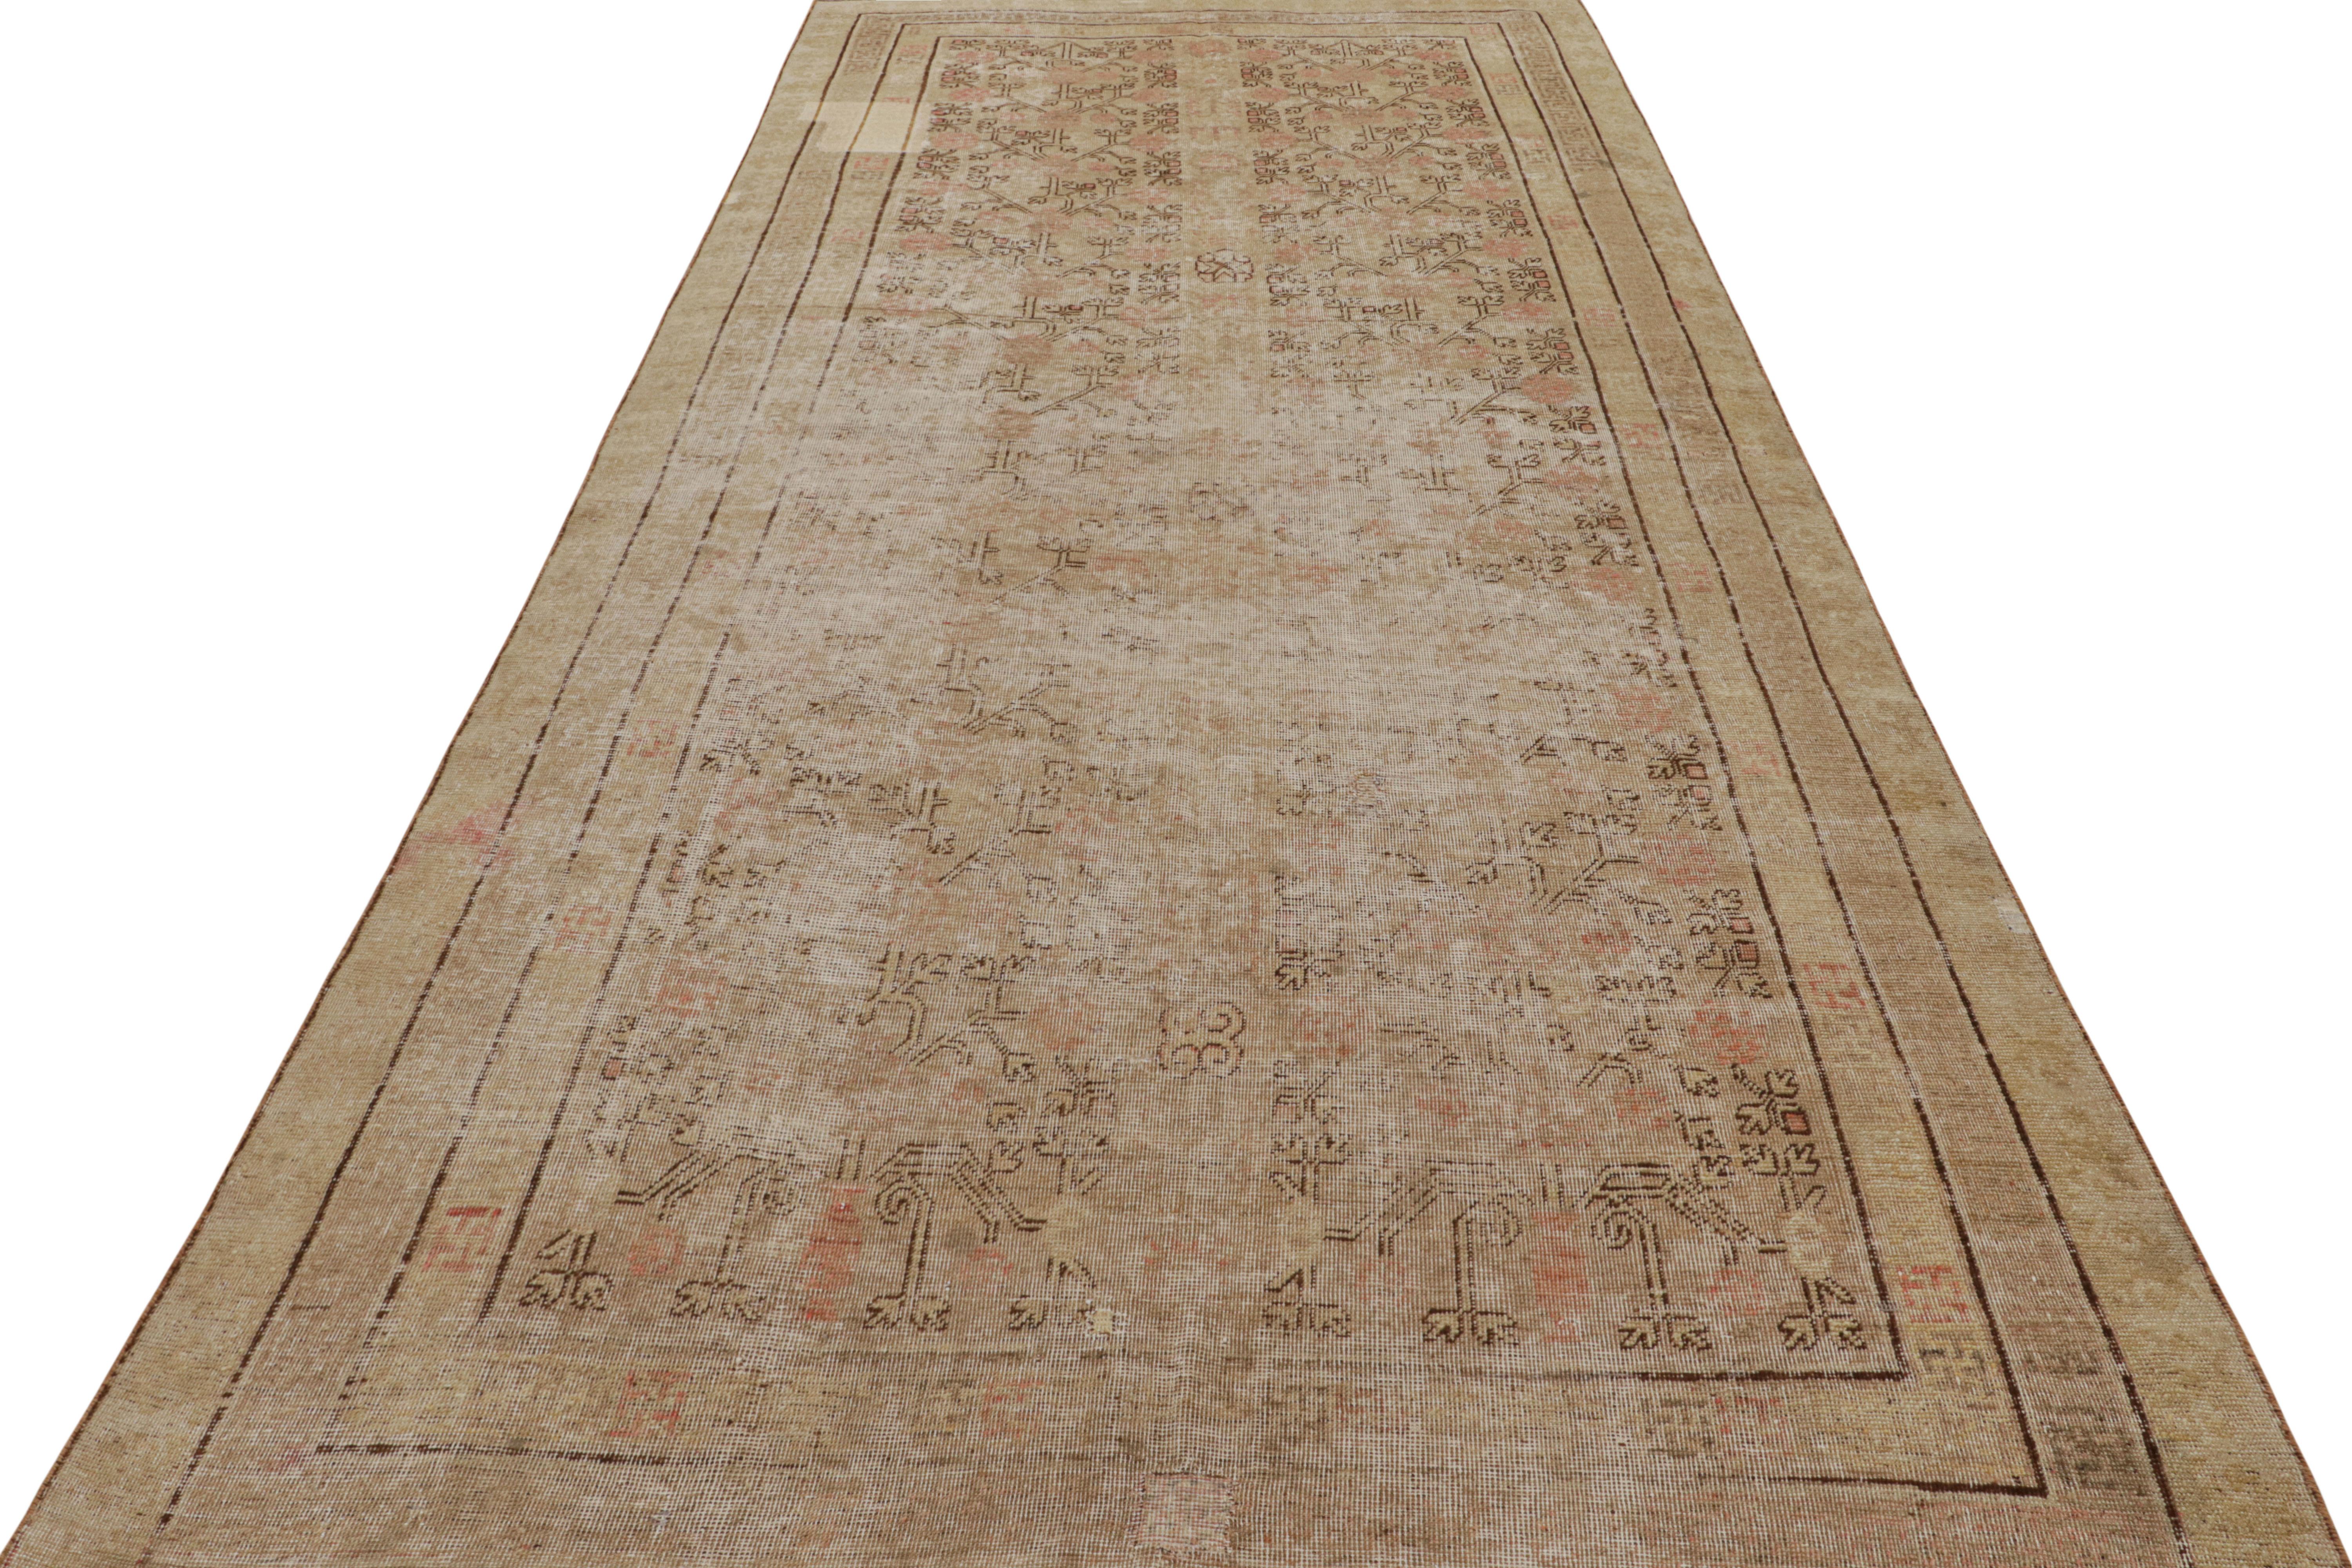 Der antike 6x13 Khotan-Teppich aus Ostturkestan, handgeknüpft aus Wolle, stammt aus der Zeit um 1920-1930 und ist der jüngste Neuzugang in der Auswahl antiker Teppiche von Rug & Kilim.

Über das Design:

Das Design ist in Beige-Braun und Rot